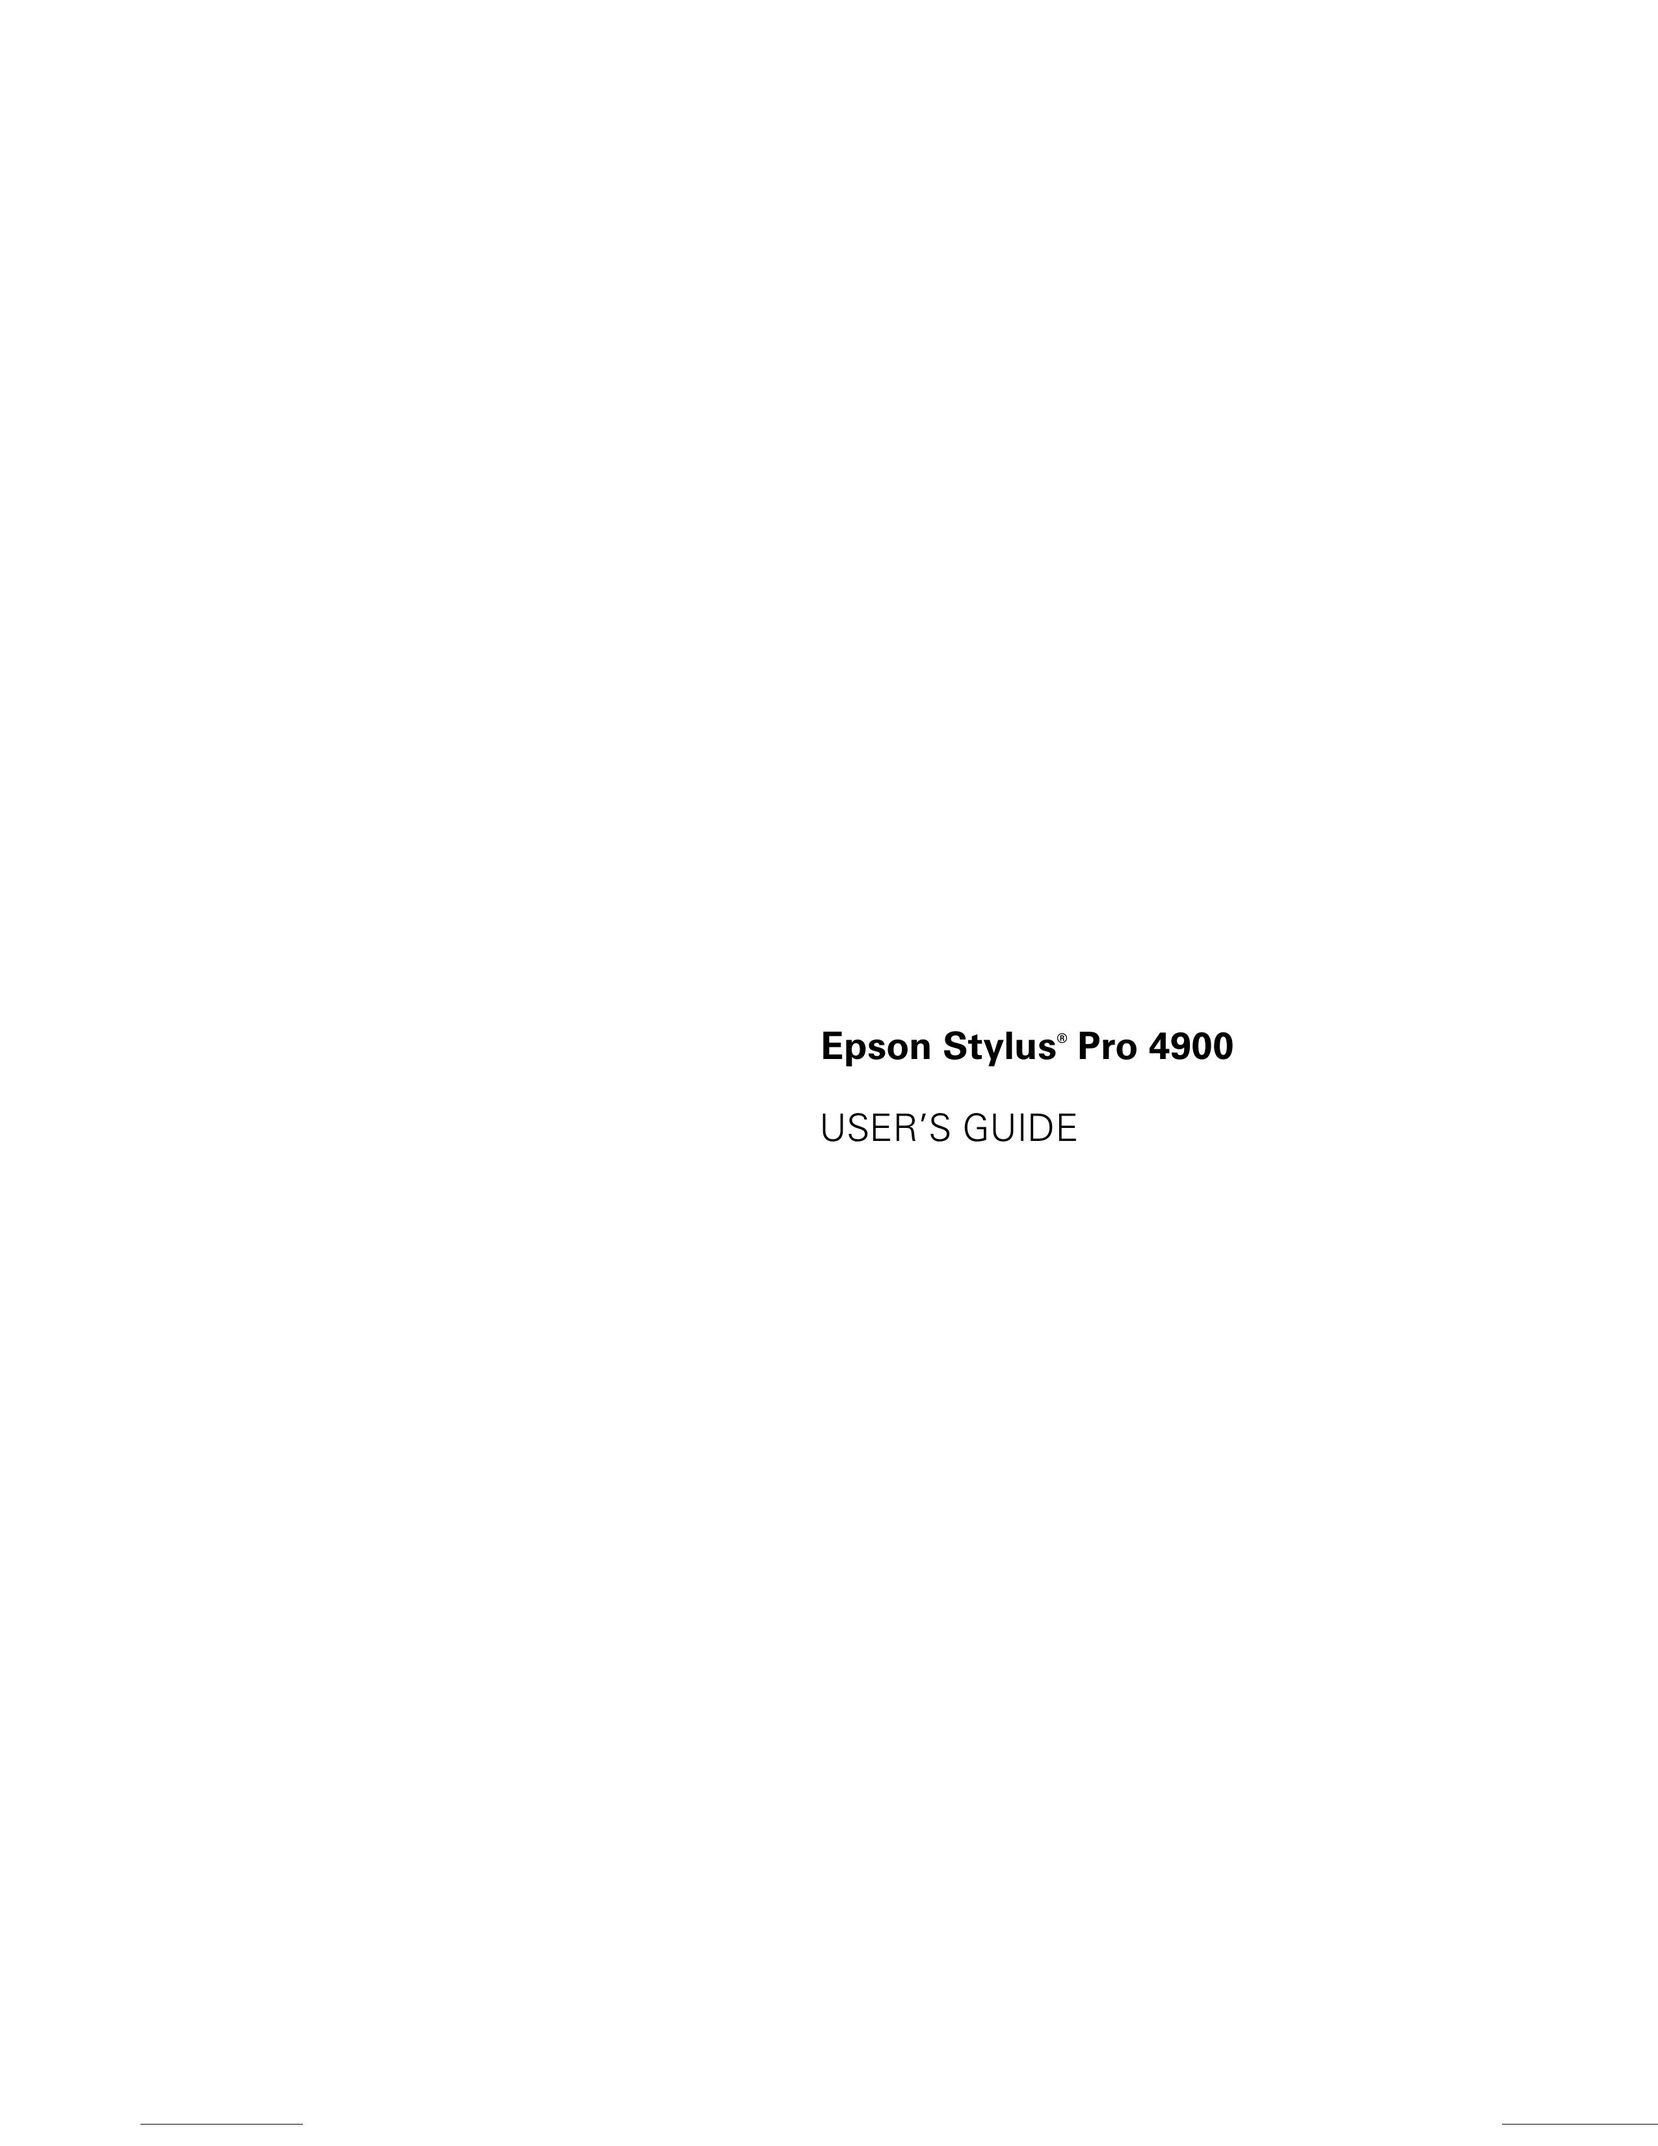 Ericsson SP4900DES Printer User Manual